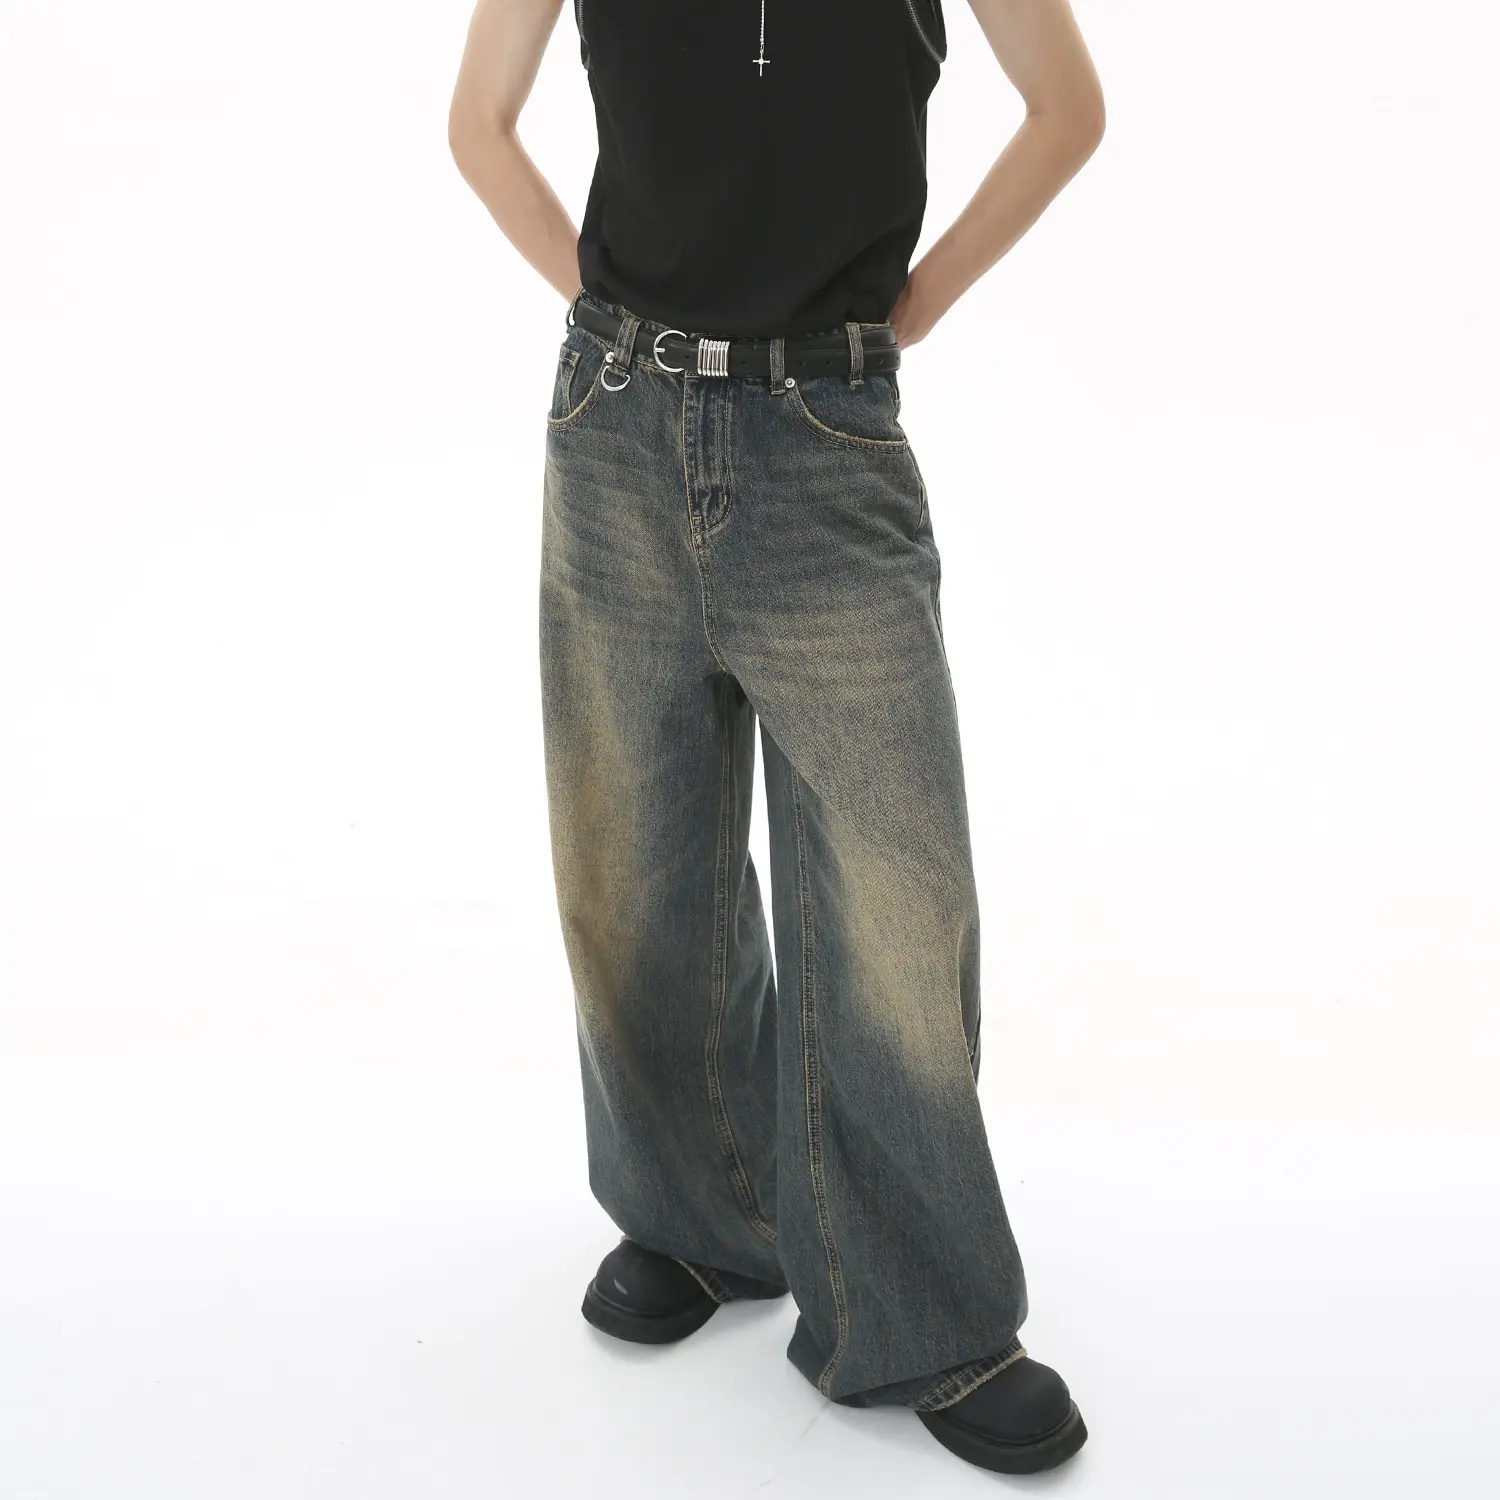 Benutzer definiertes Logo Herren Mode Jeans Jeans Wasch stil gerade Breites Bein Plus Size Herren Baggy Custom Jeans Hosen für Herren